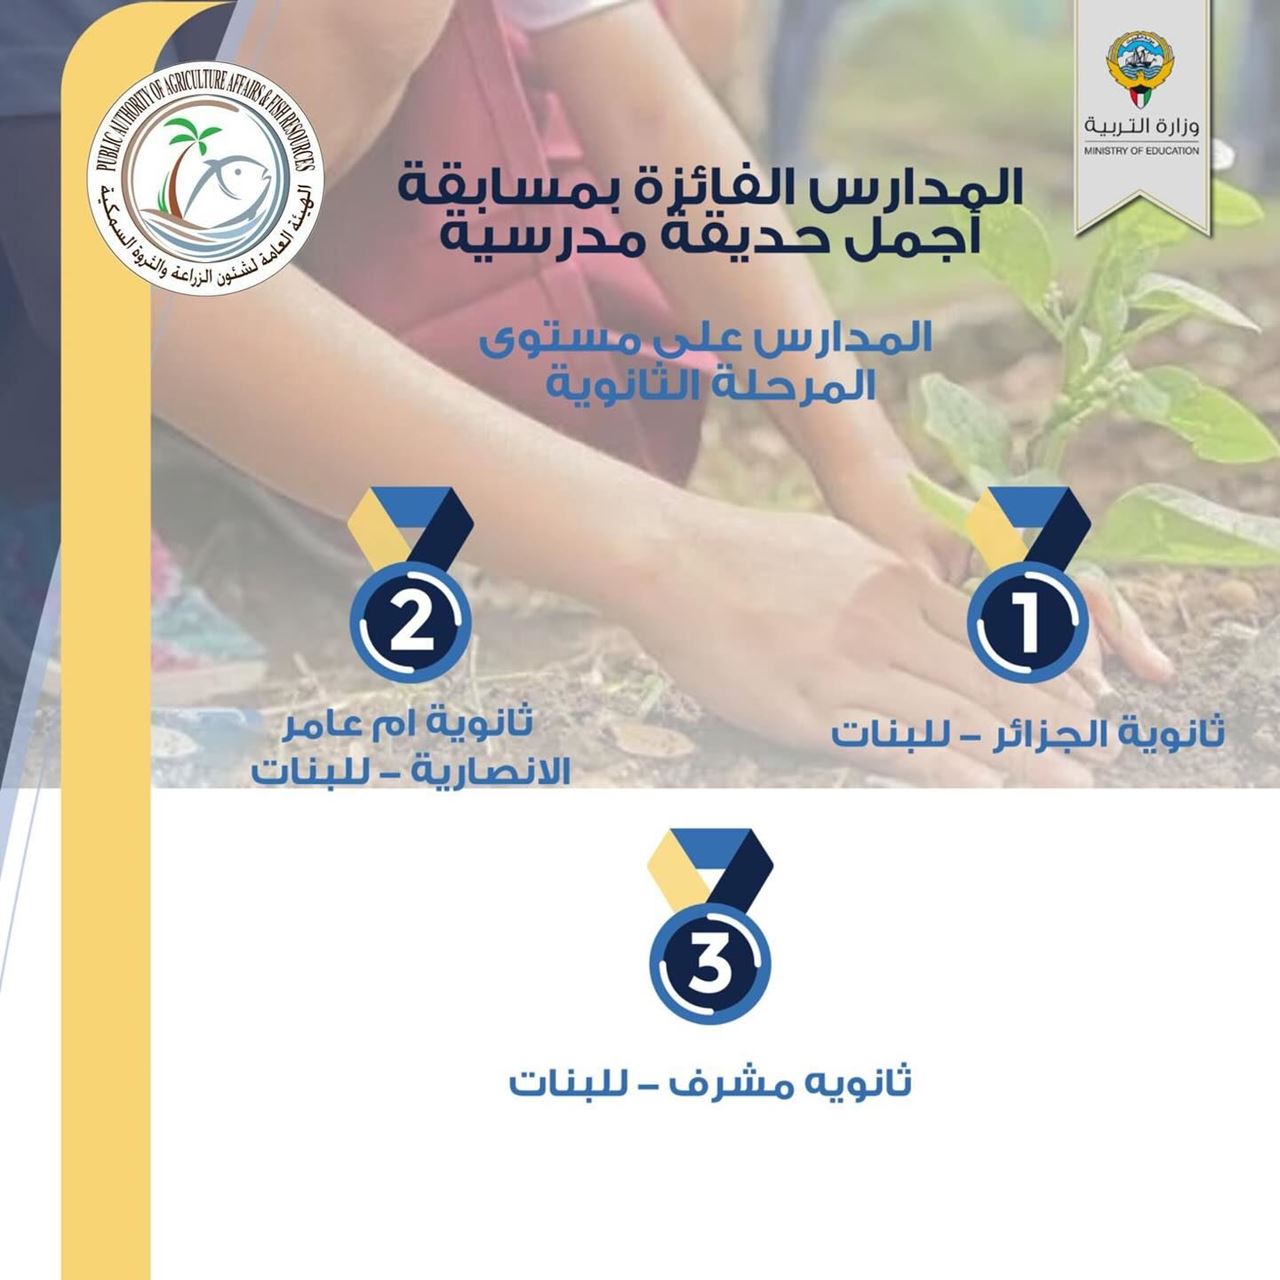 المدارس الفائزة بمسابقة "أجمل حديقة مدرسية" في الكويت